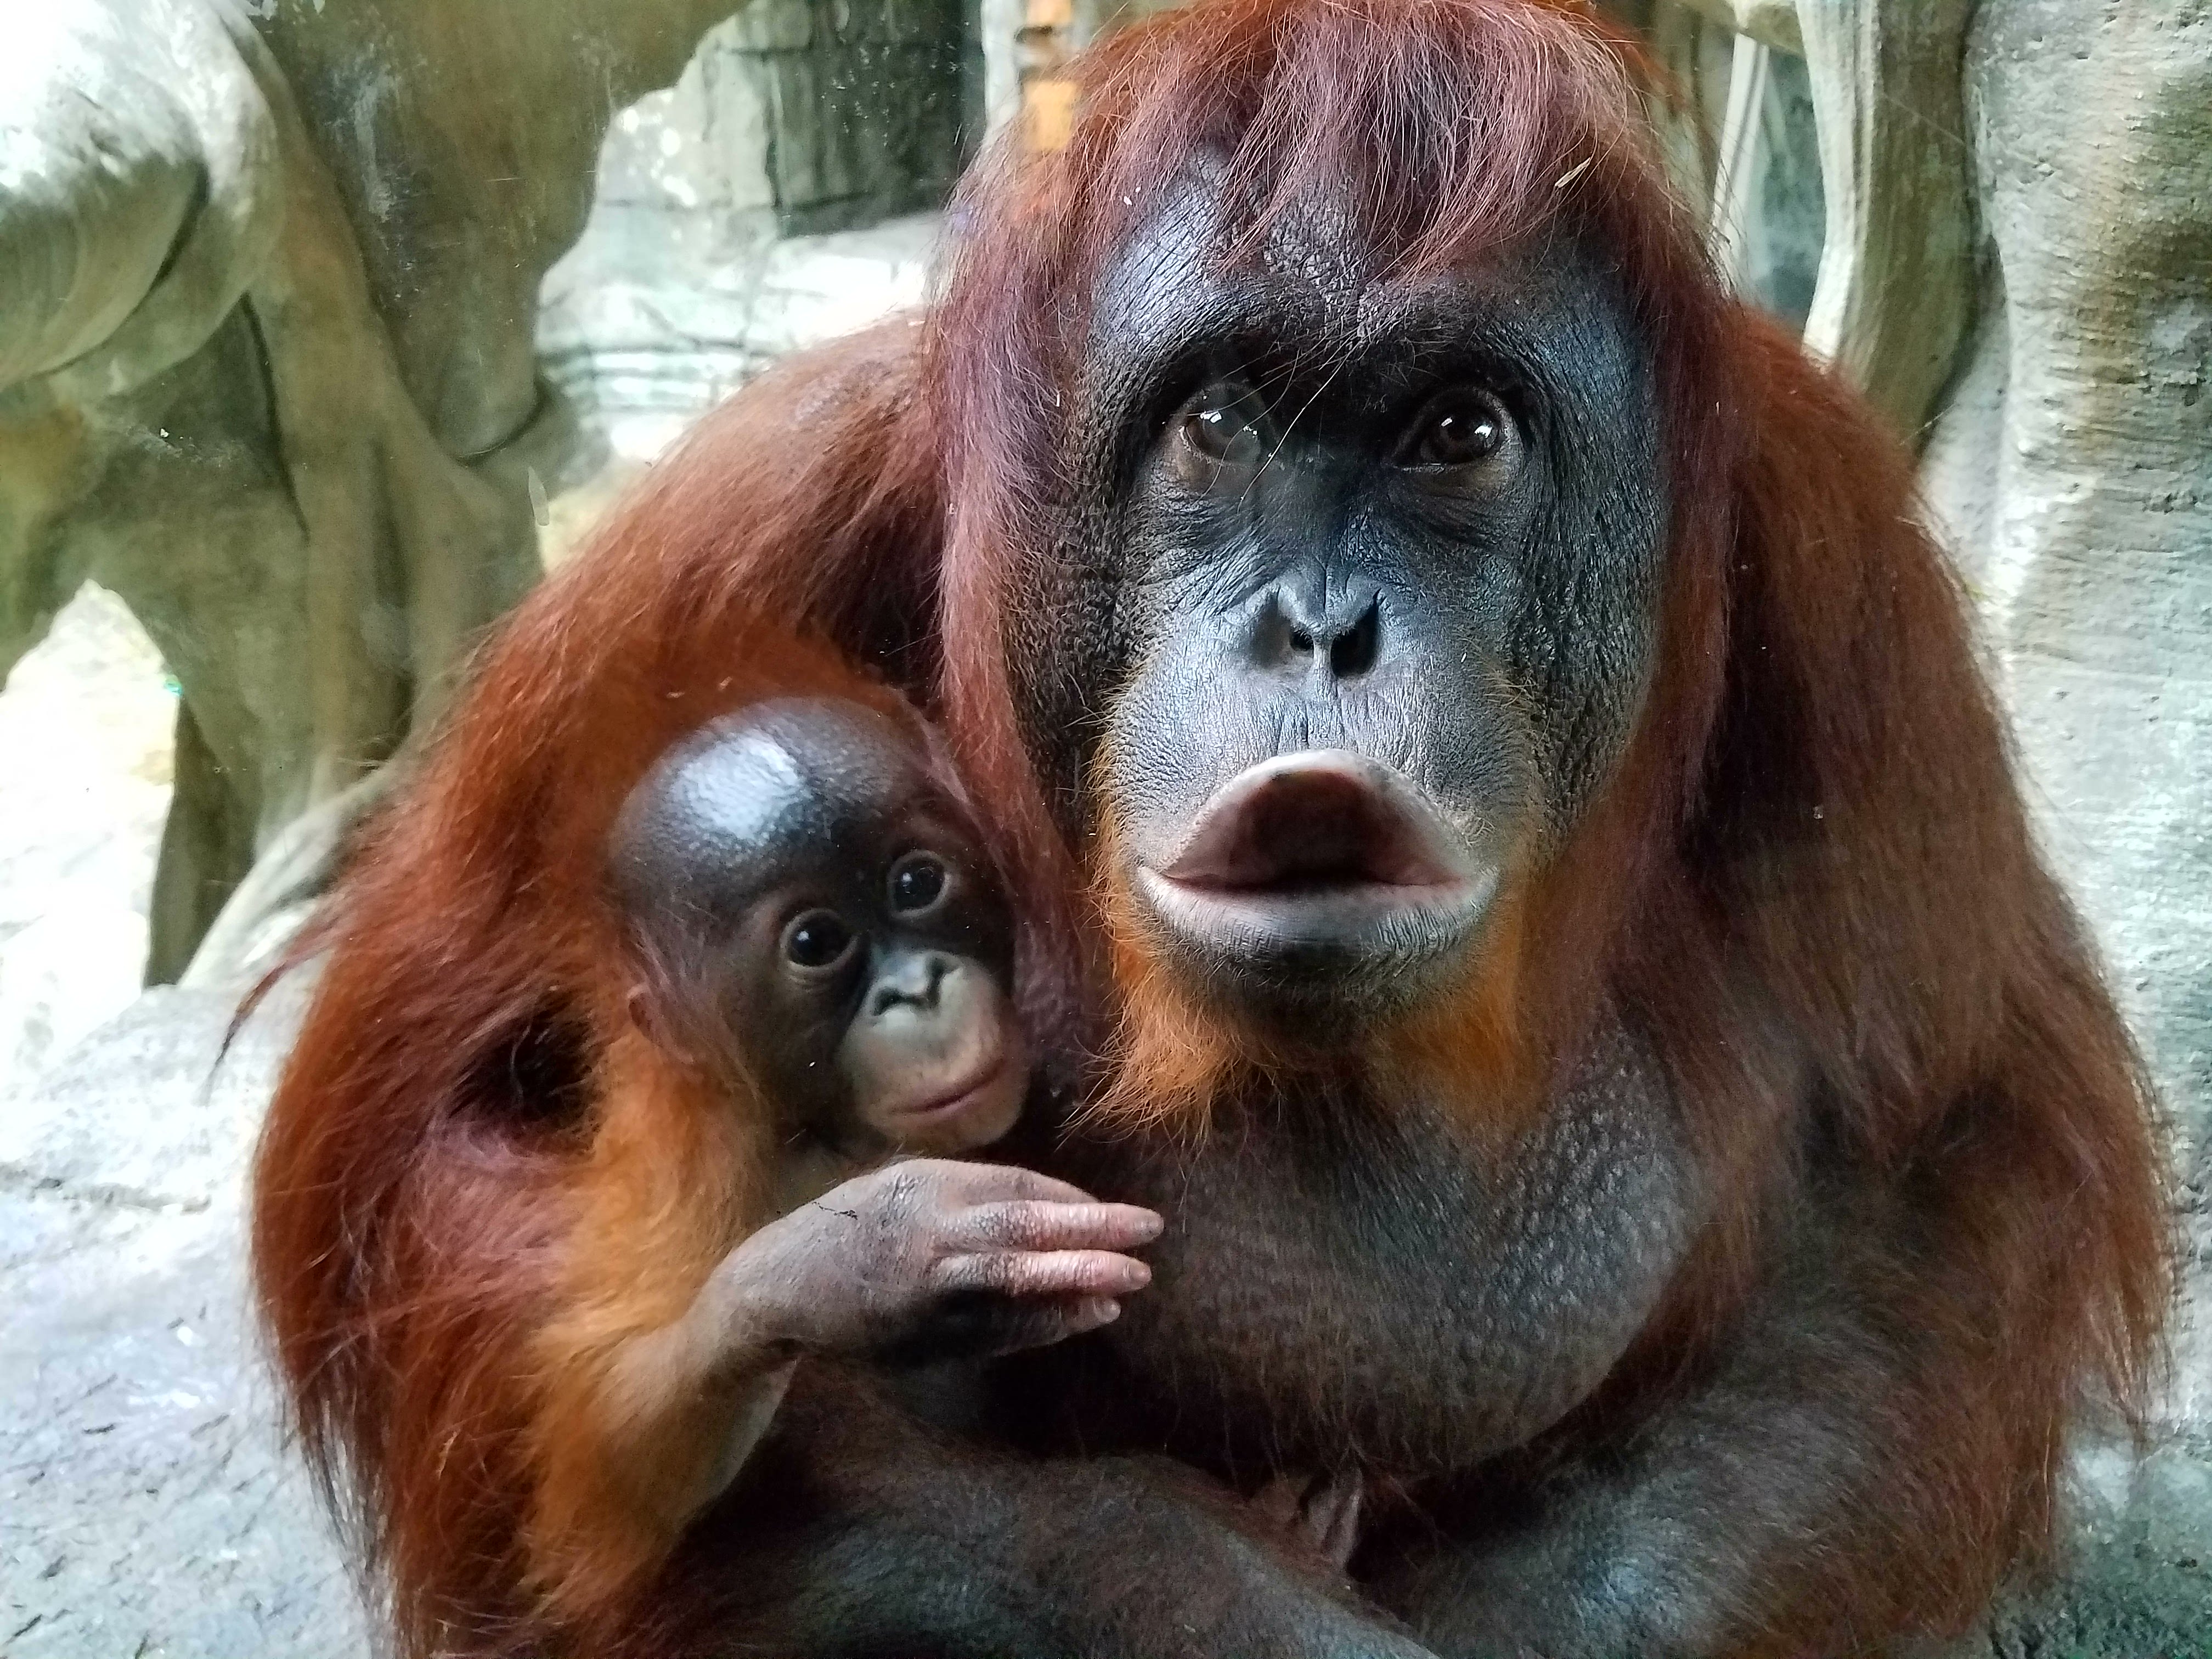 World Orangutan Day